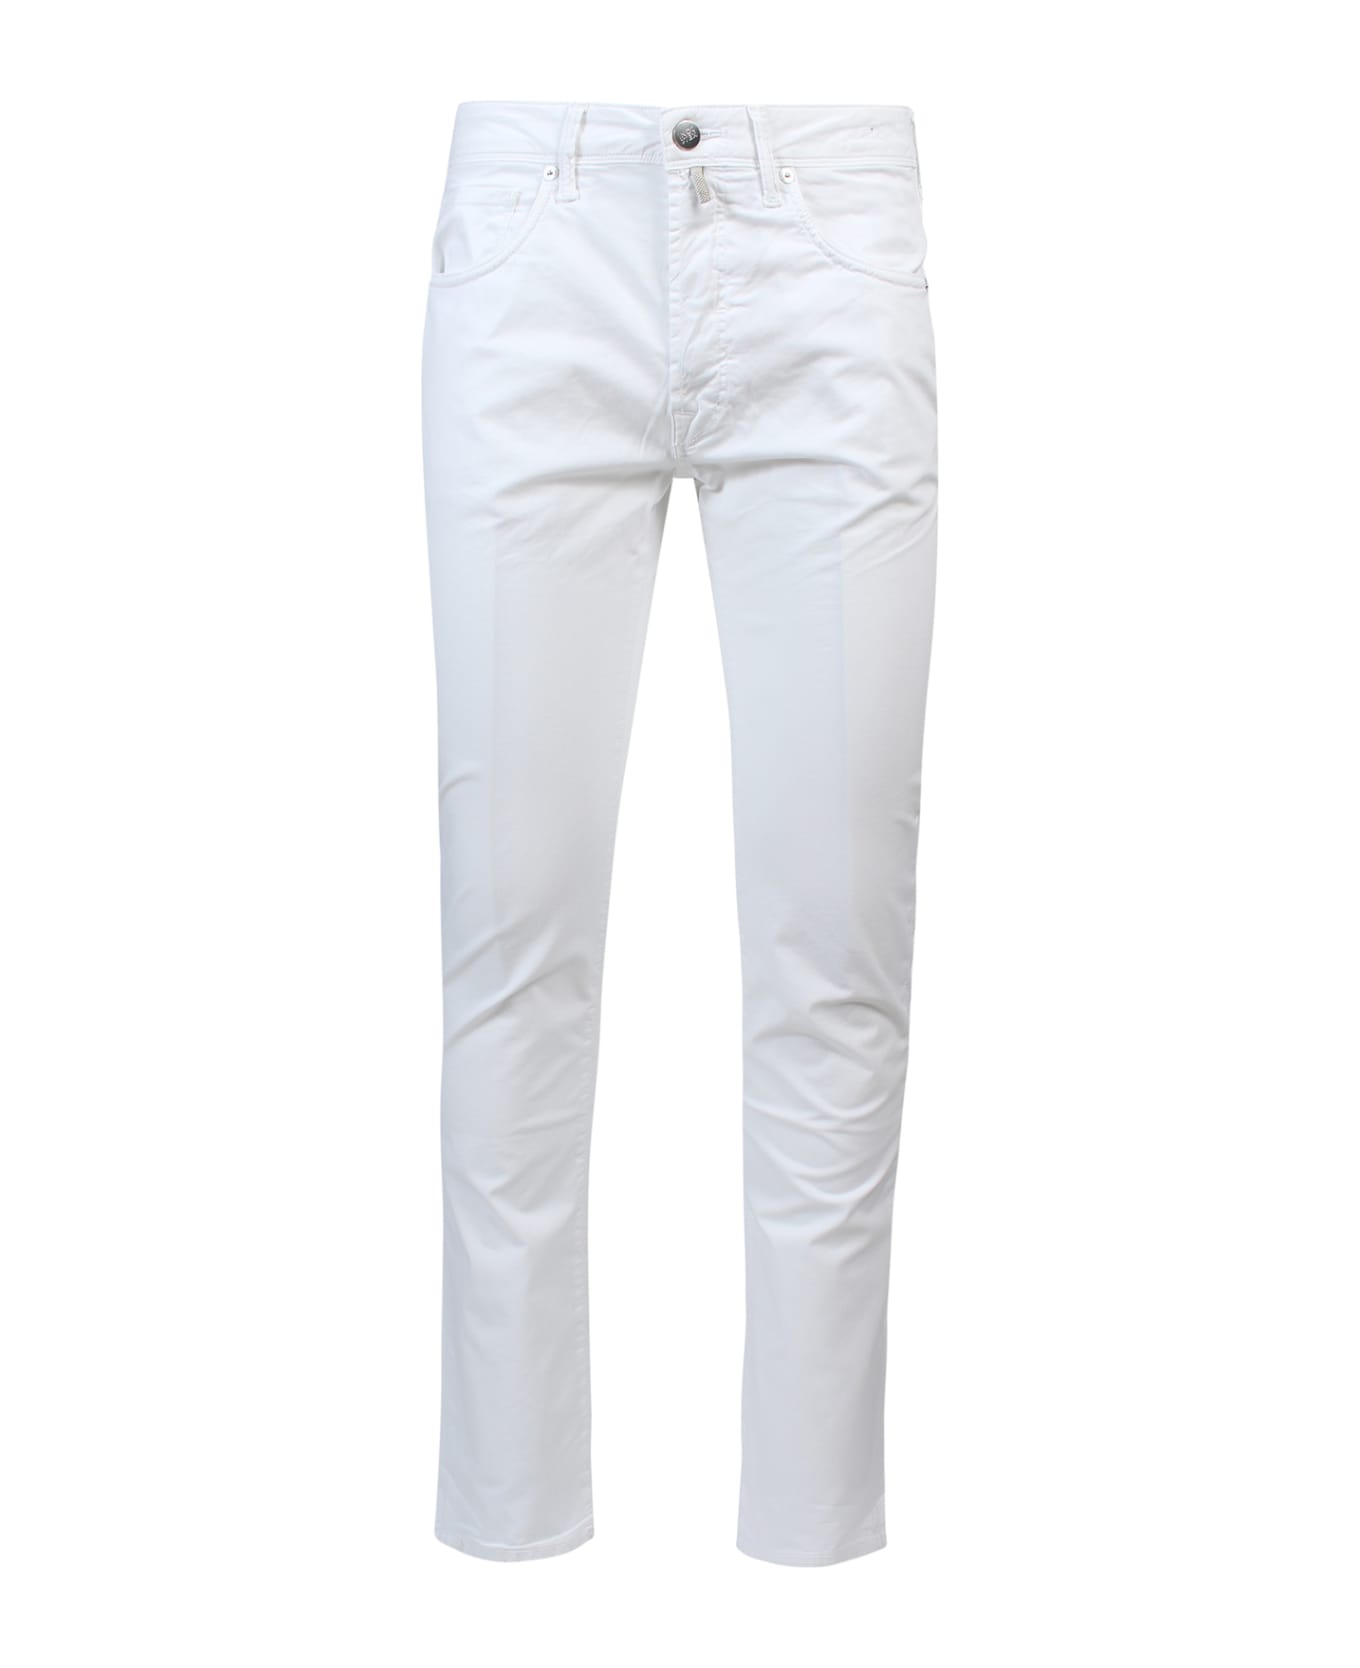 Incotex Trouser - White